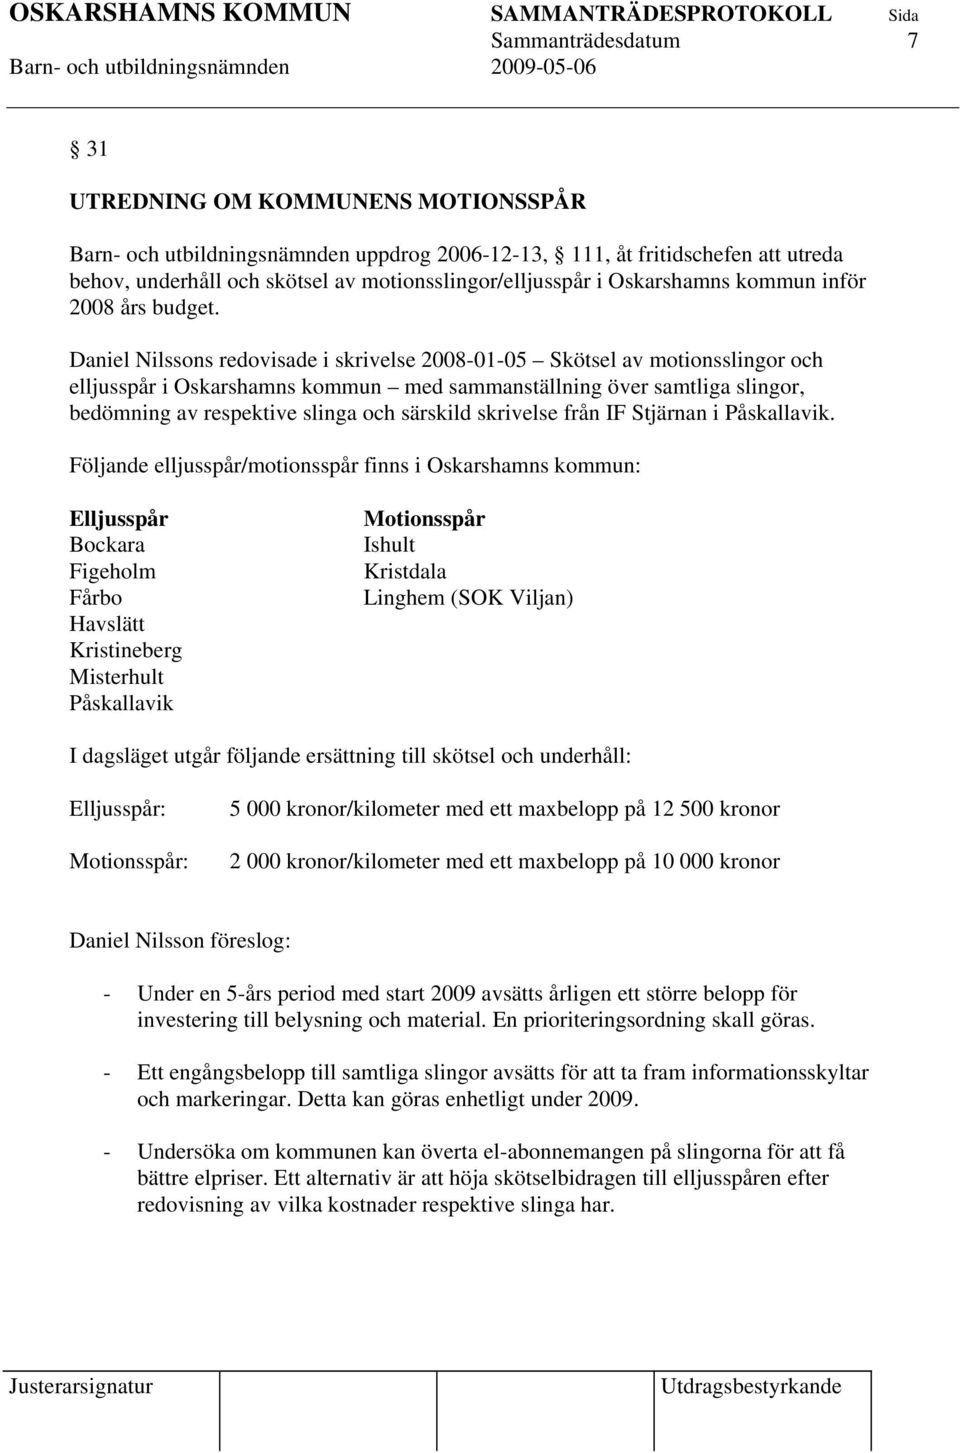 Daniel Nilssons redovisade i skrivelse 2008-01-05 Skötsel av motionsslingor och elljusspår i Oskarshamns kommun med sammanställning över samtliga slingor, bedömning av respektive slinga och särskild